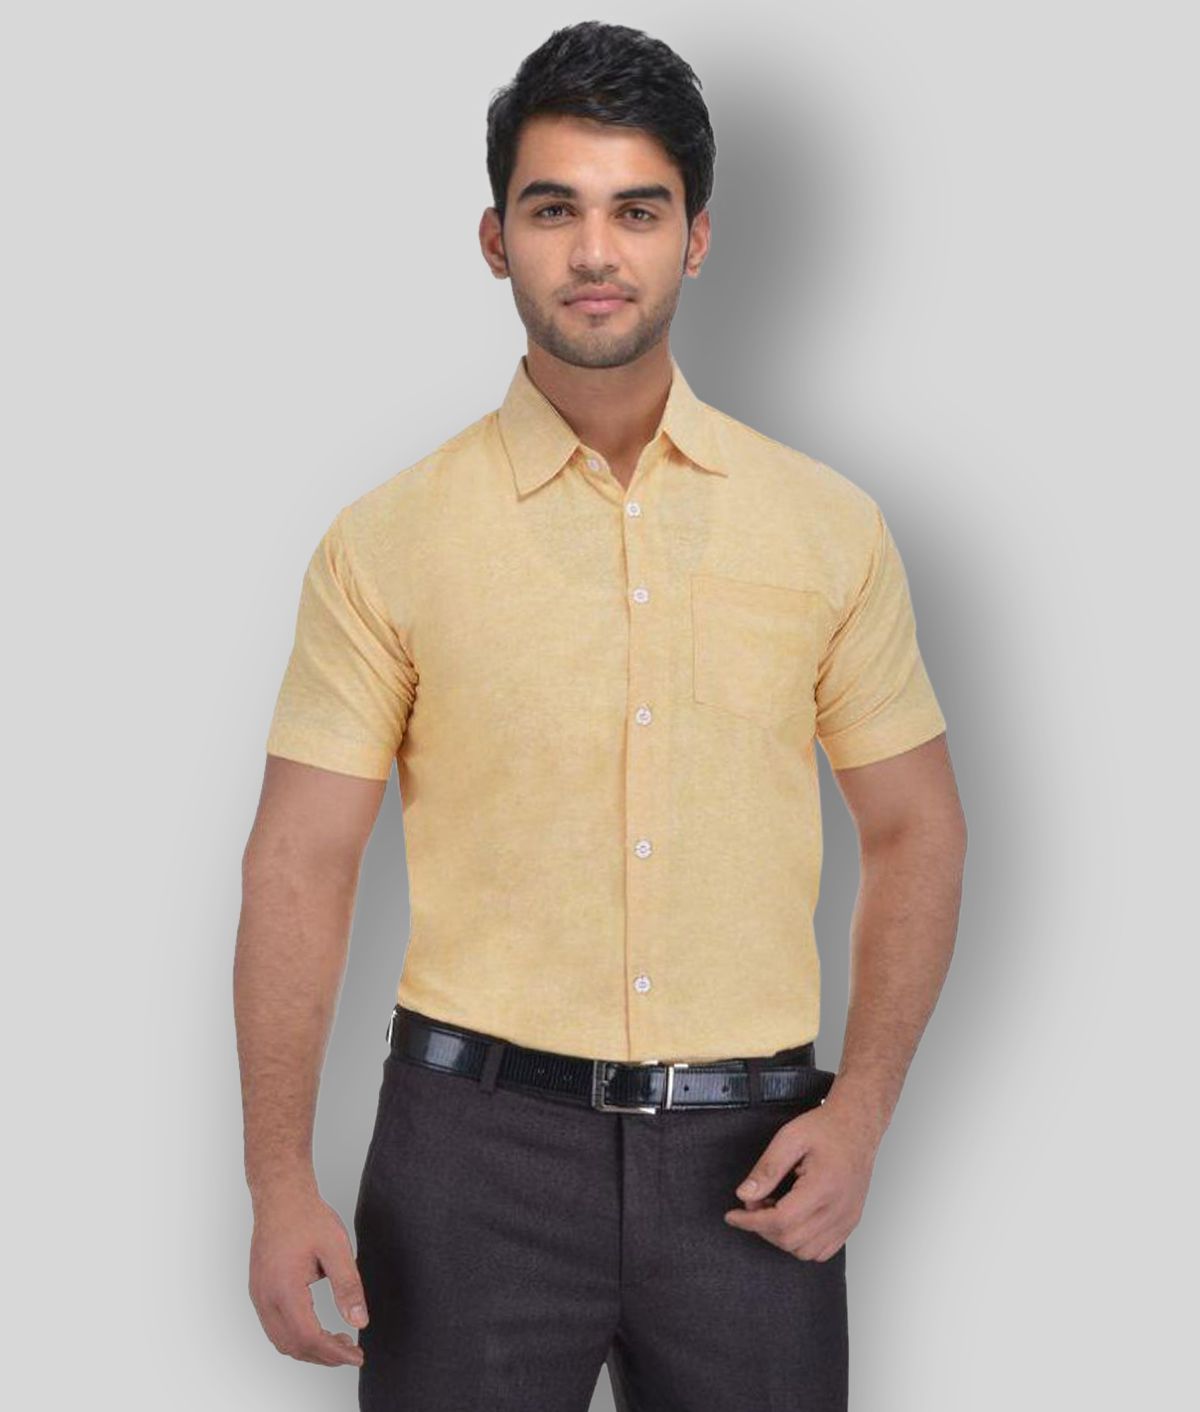     			DESHBANDHU DBK - Beige Cotton Regular Fit Men's Formal Shirt (Pack of 1)